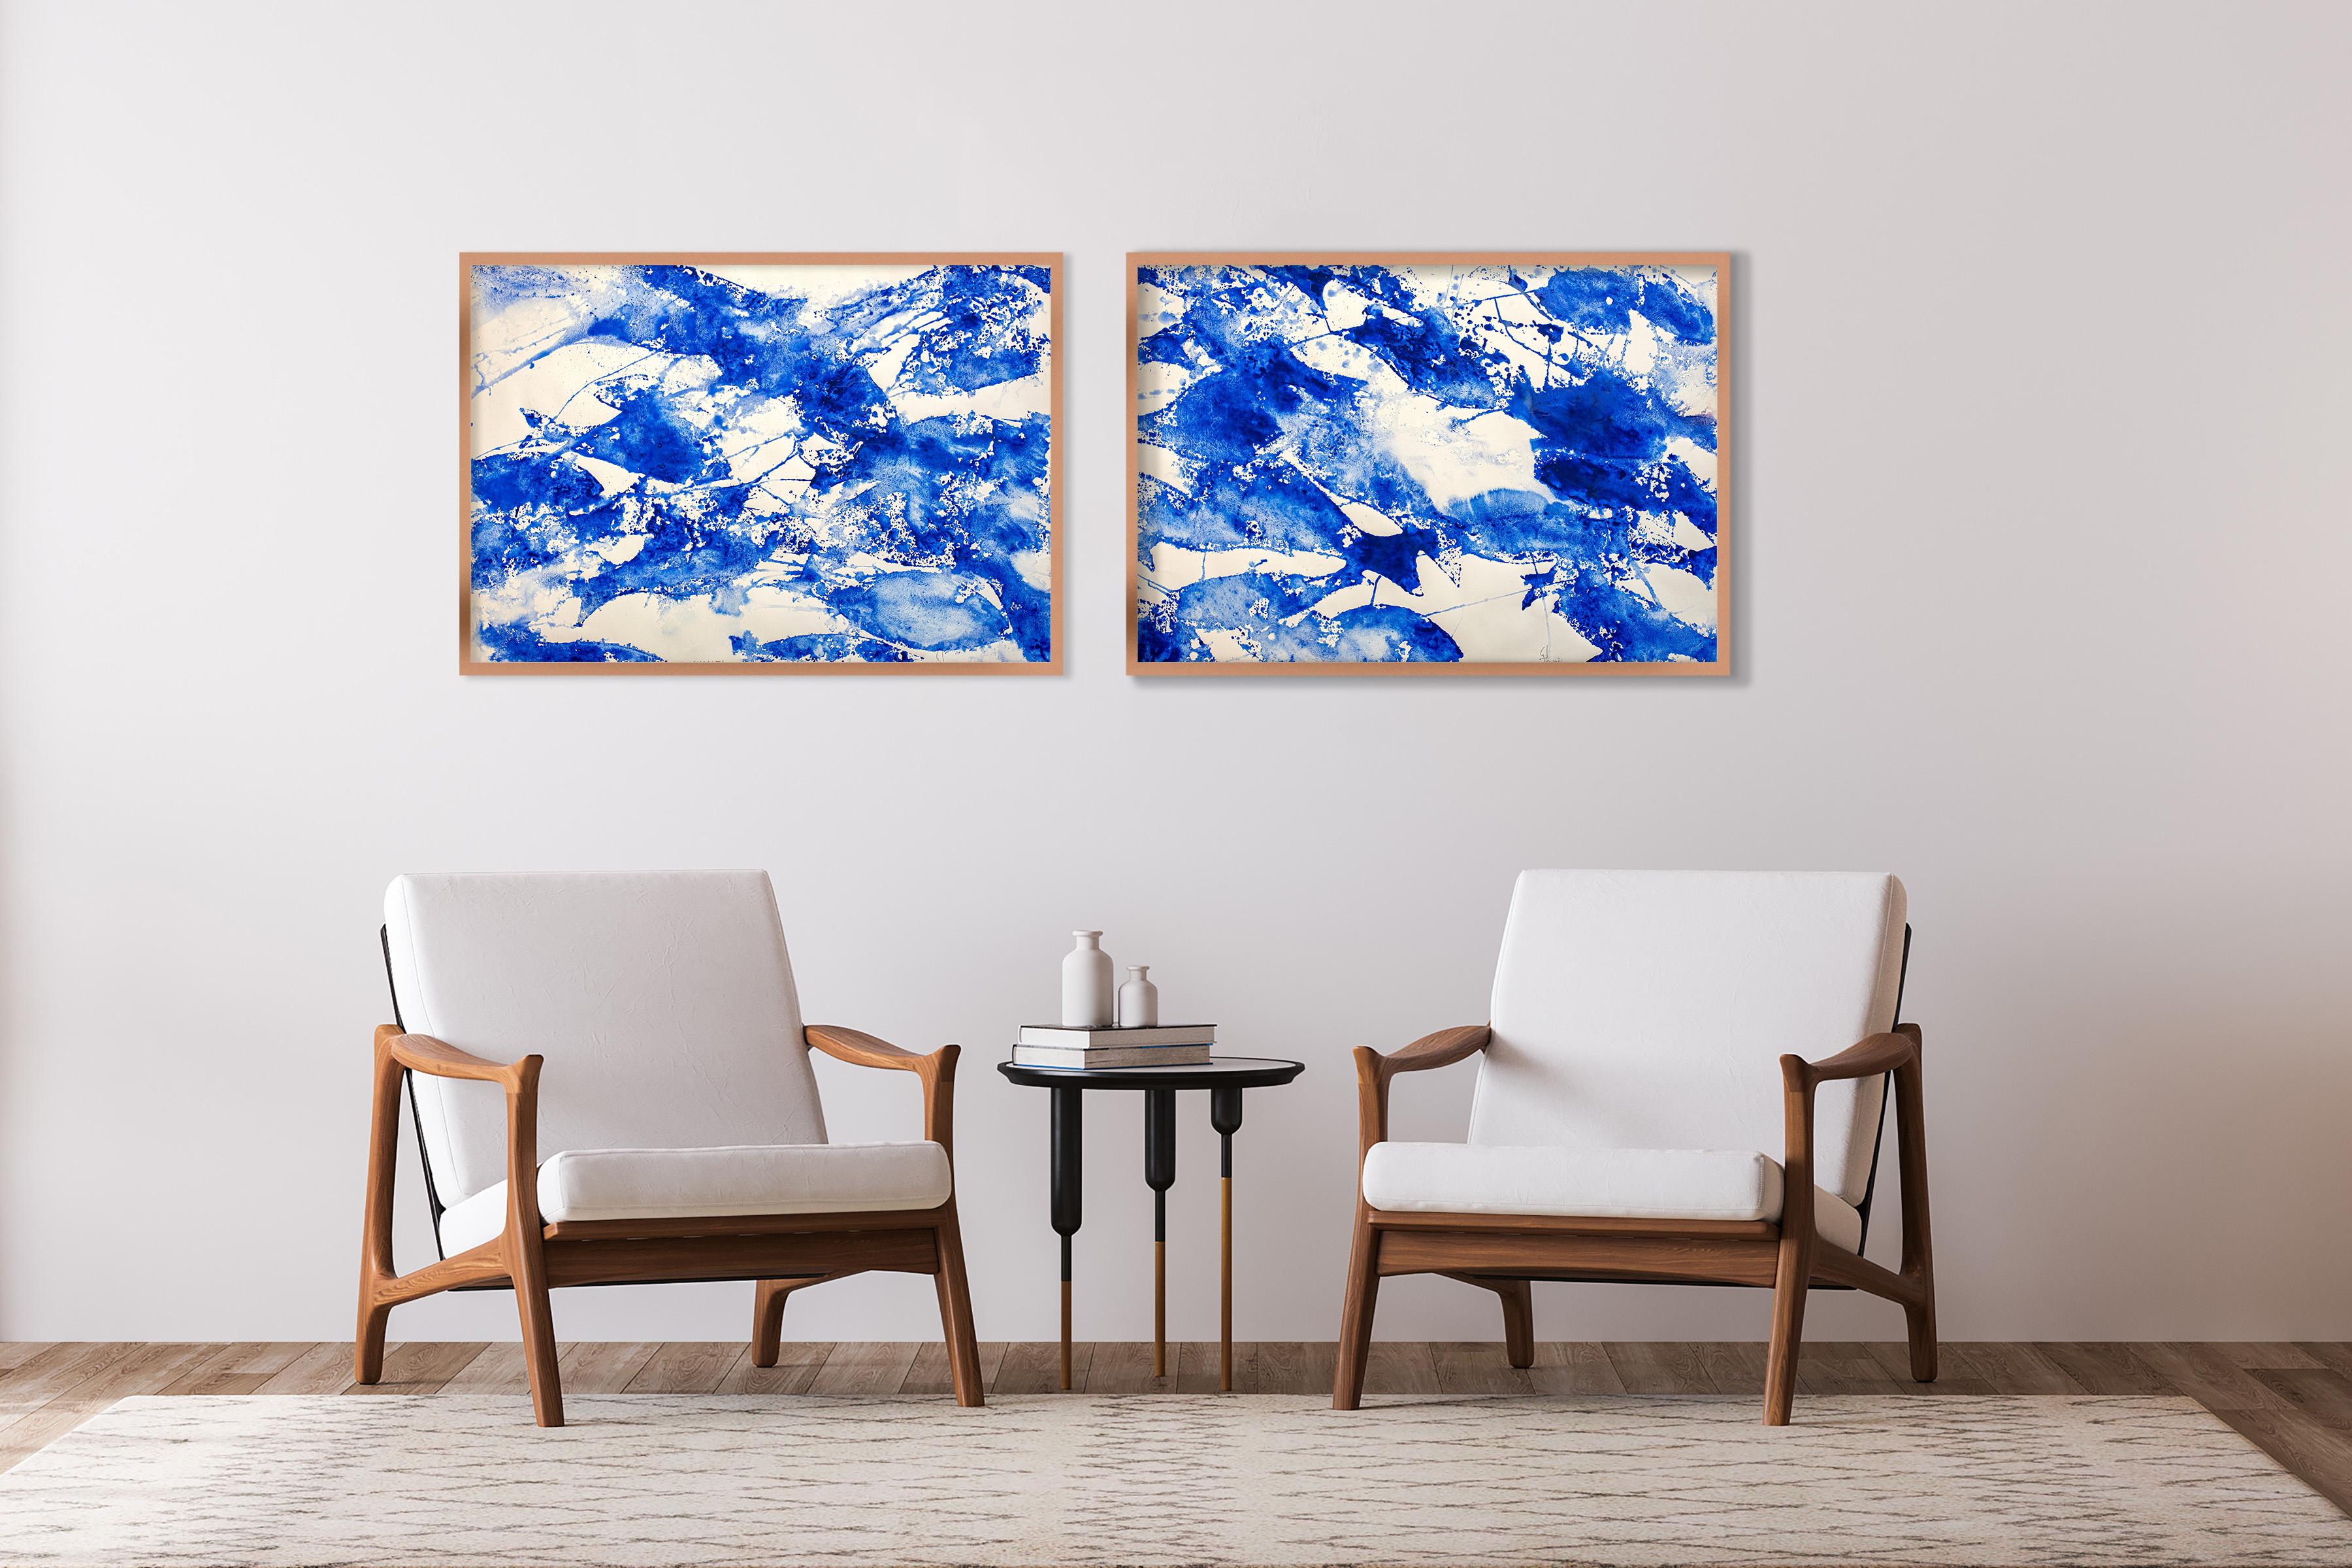 Abstraktes Diptychon Meer des Blauen Diptychons, abstrakte blau-weiße Fischmuster, mediterraner Stil  – Painting von Enric Servera